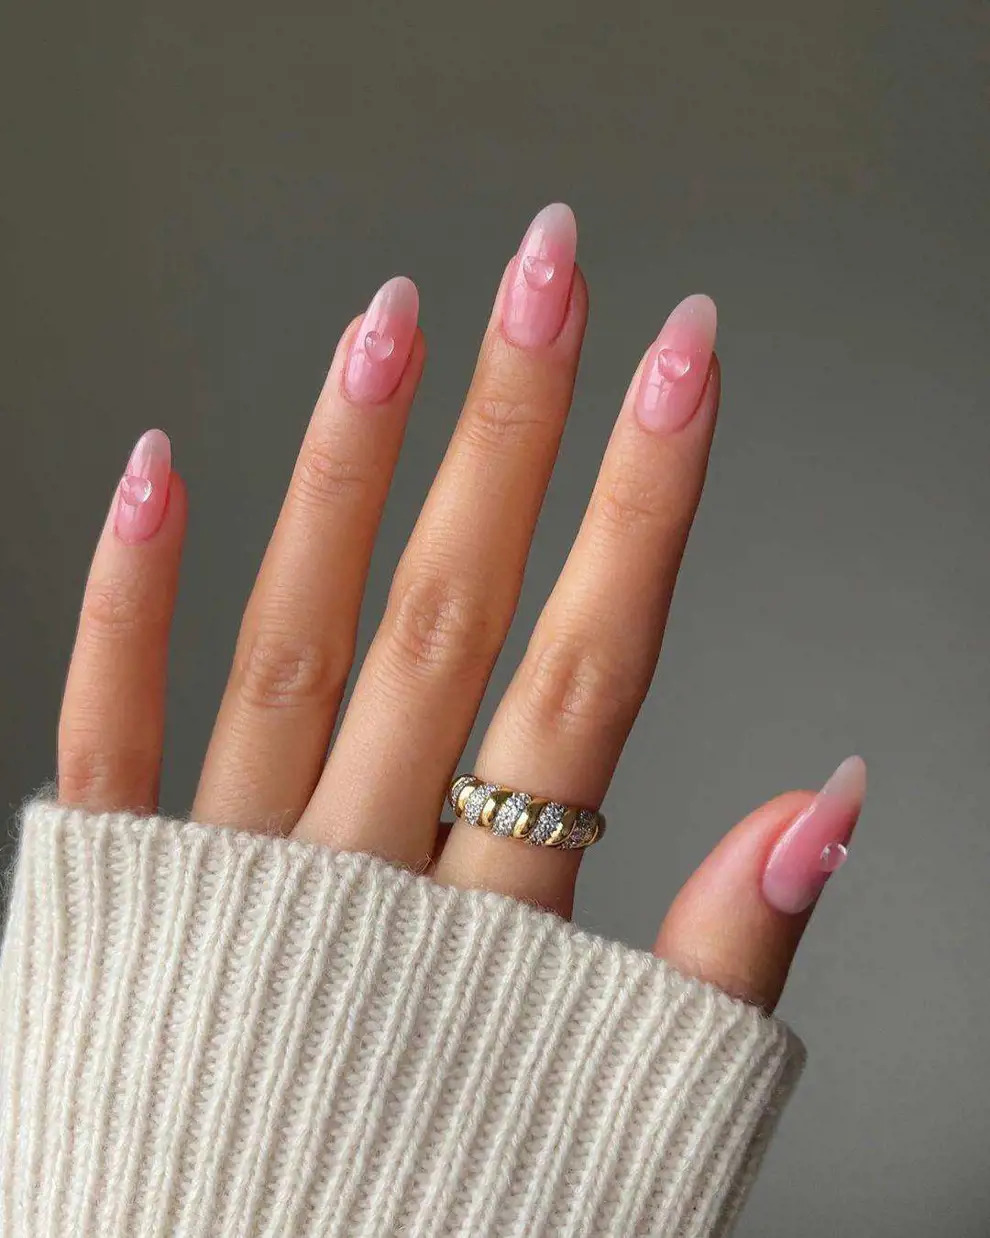 Розовый маникюр с выпуклым сердечком на длинных овальных ногтях